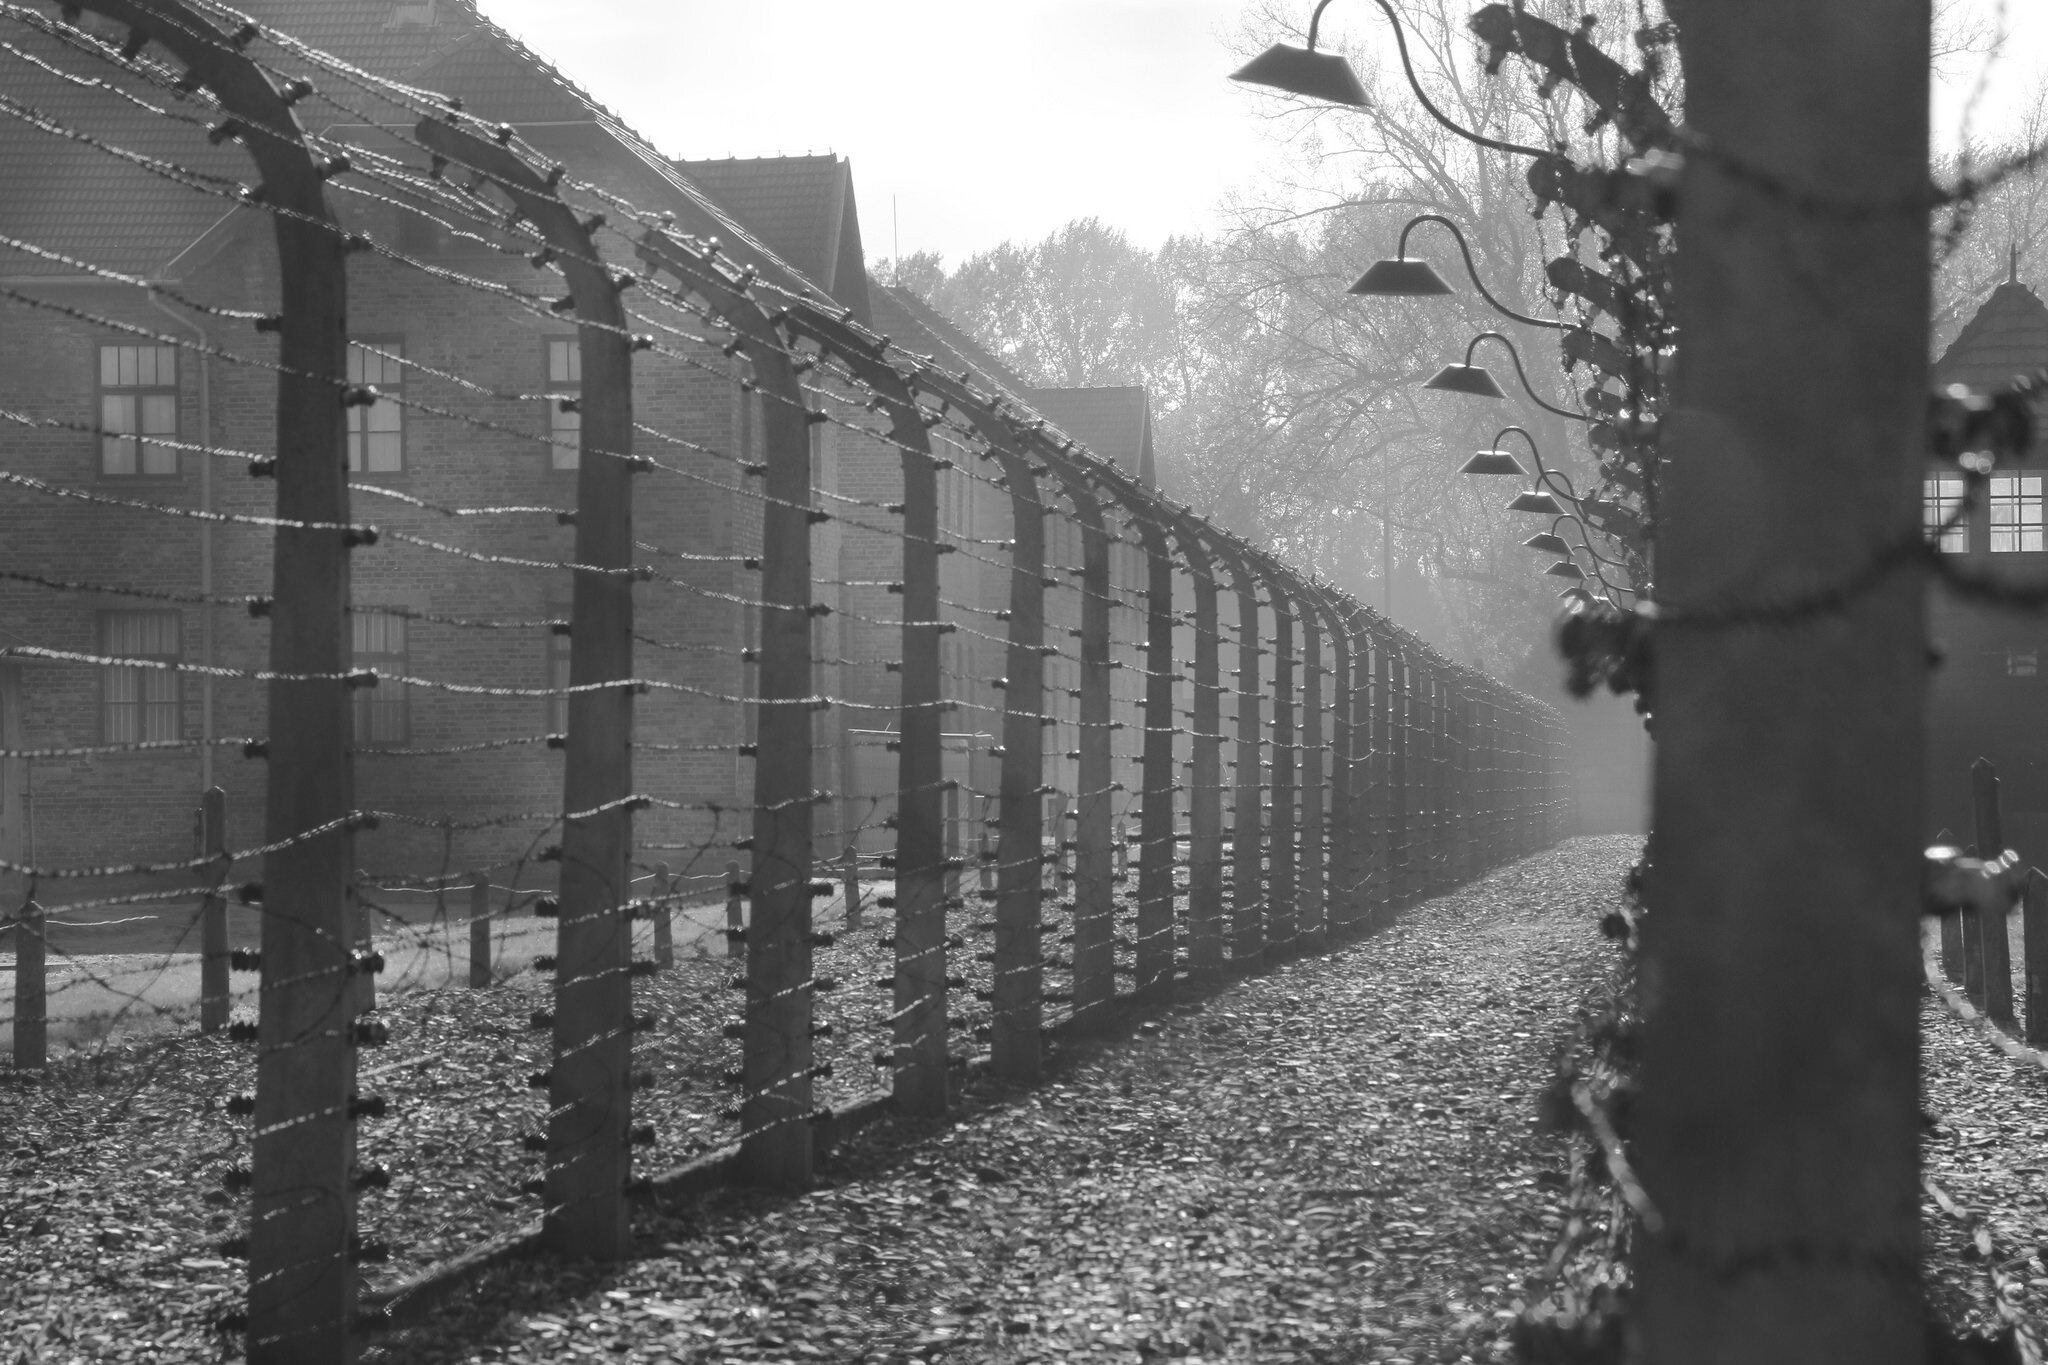 KL Auschwitz-Birkenau